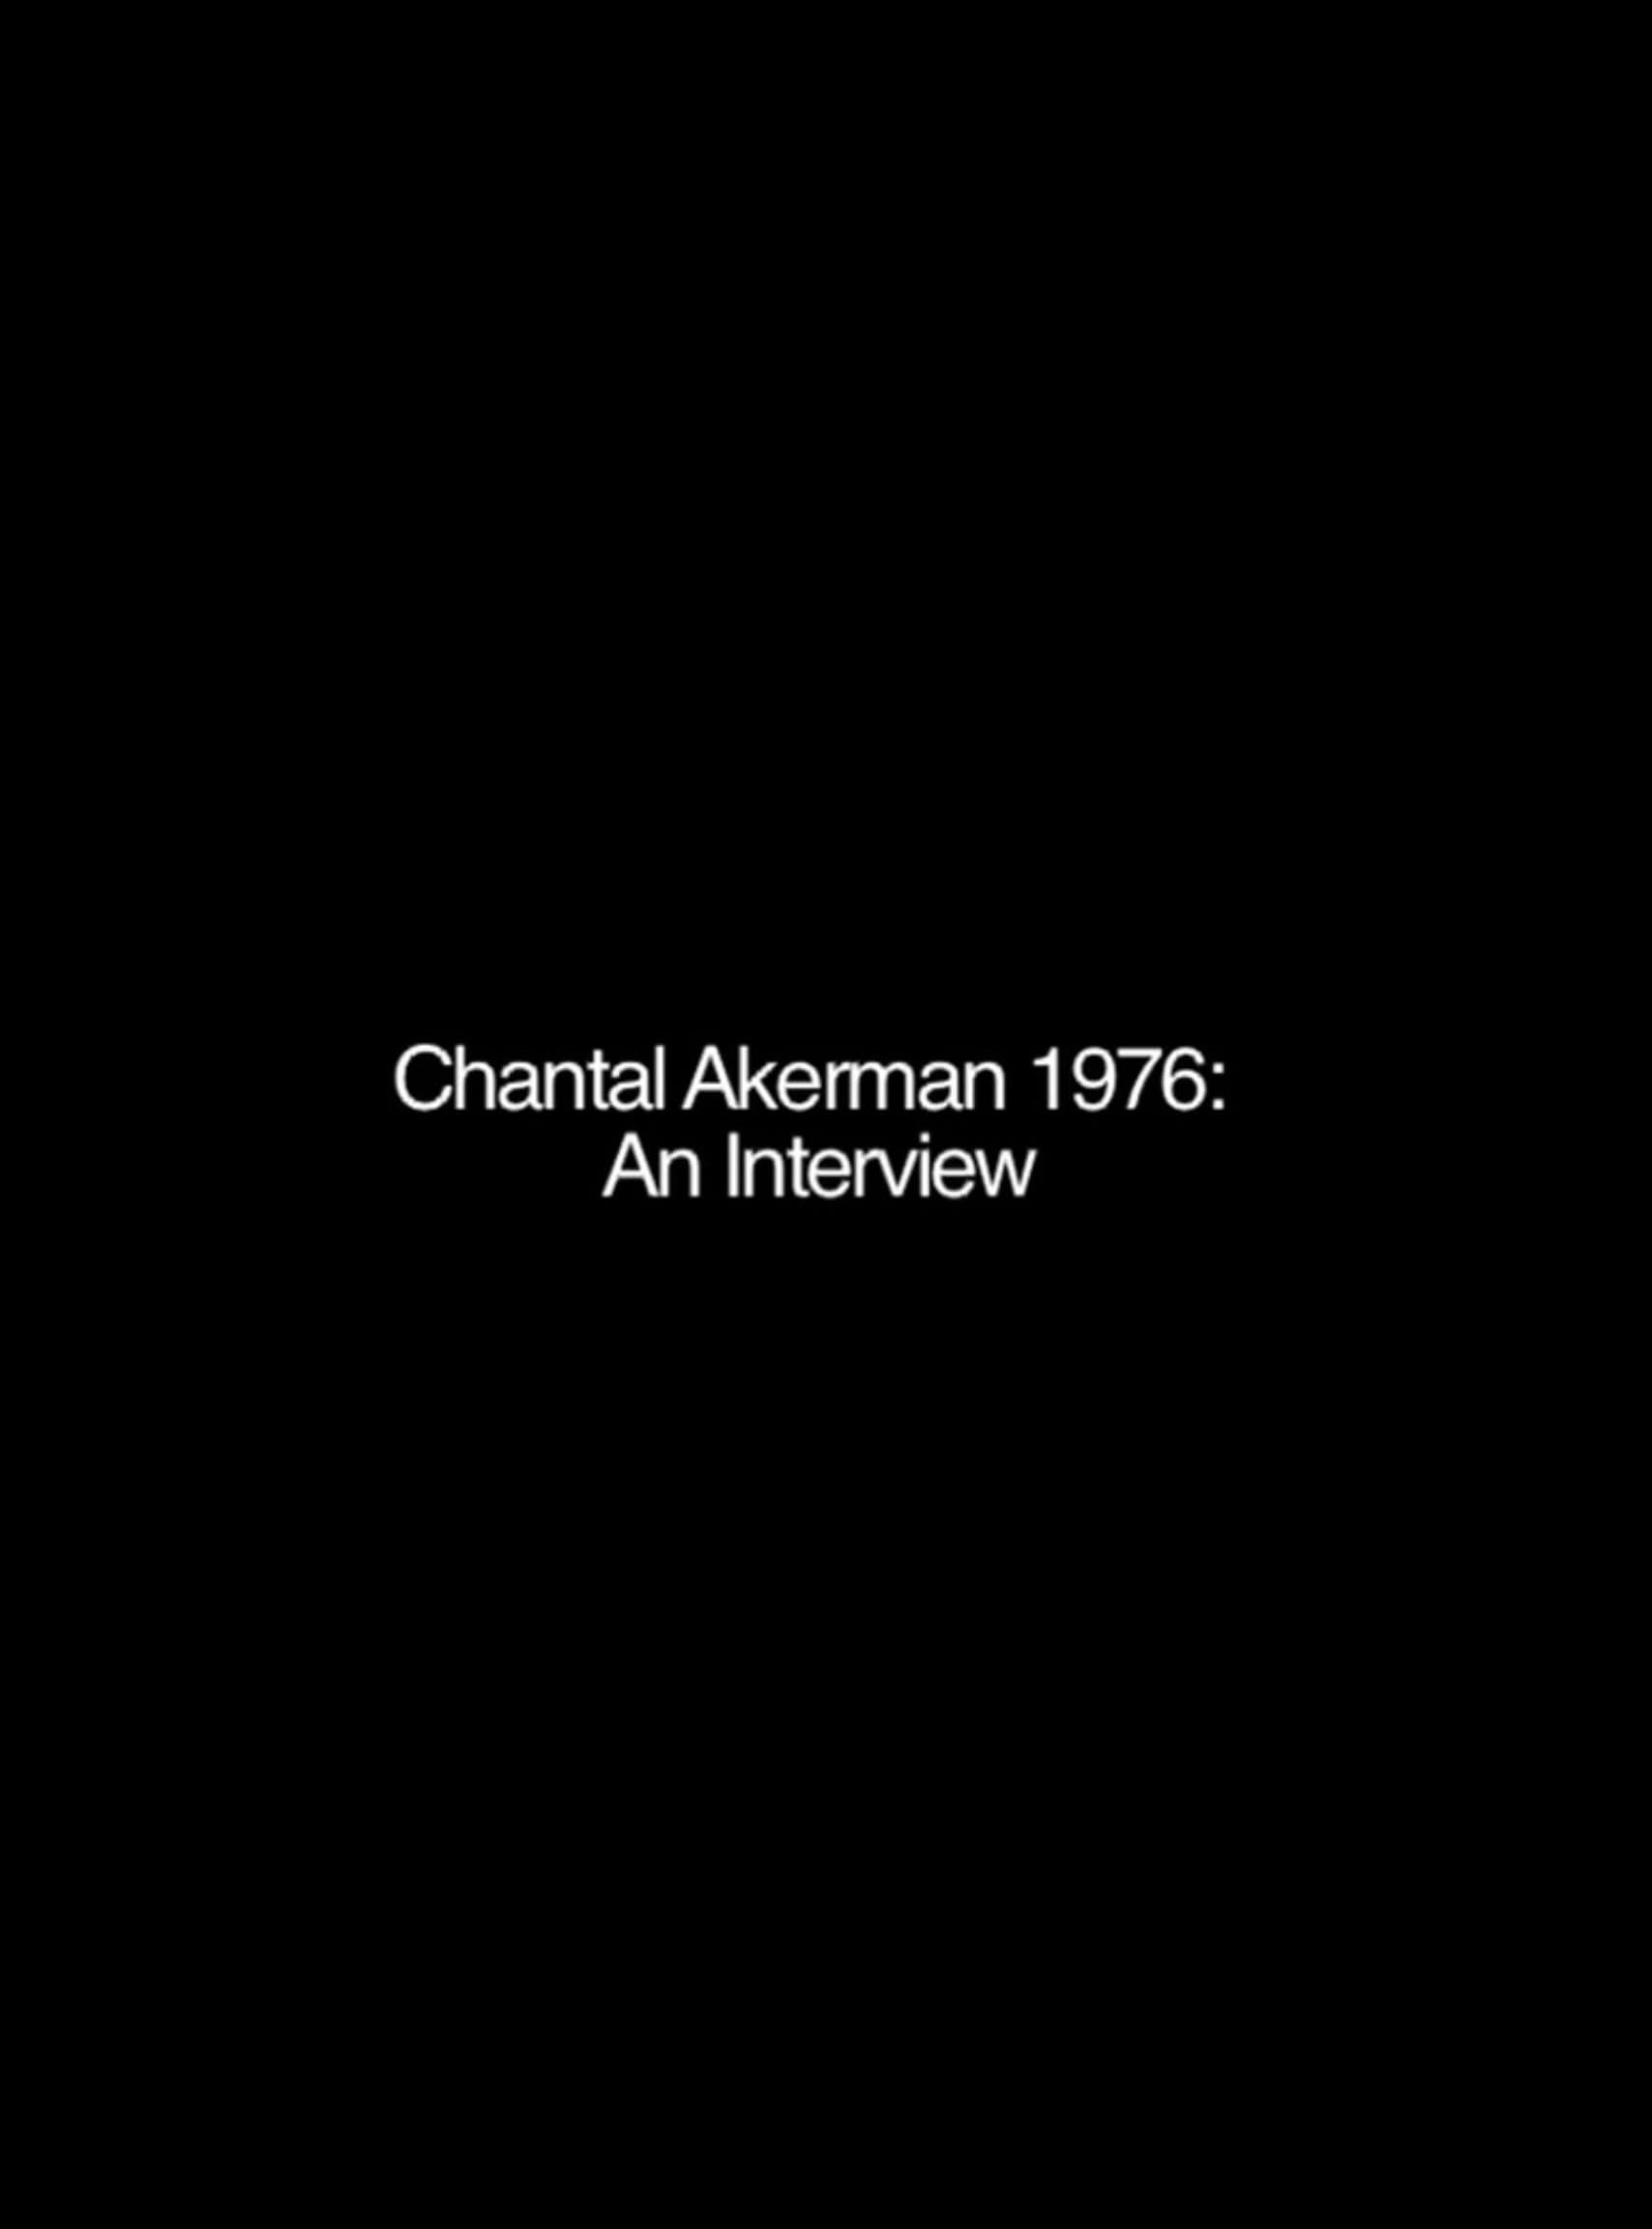 Chantal Akerman: An Interview poster